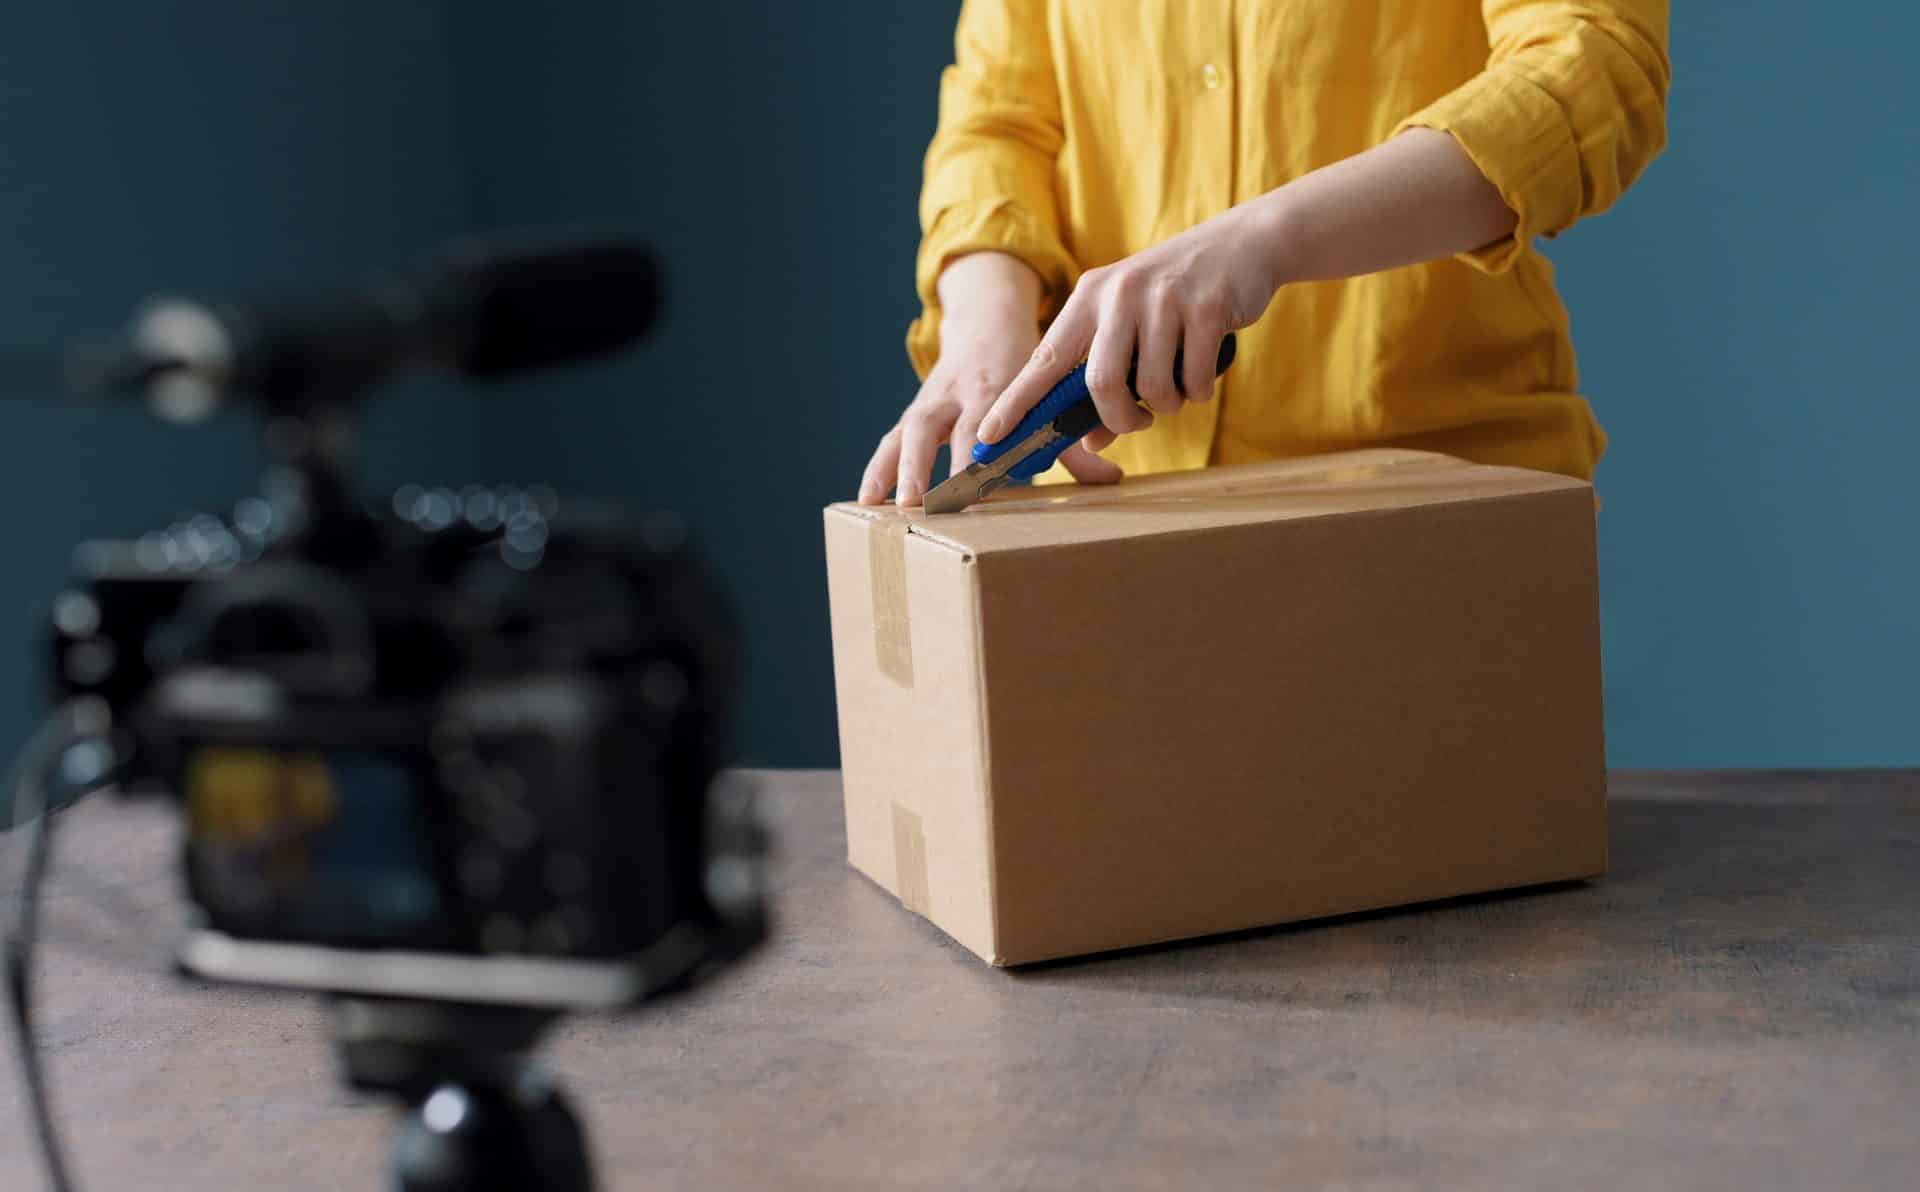 Ein Karton wird vor einer Kamera ausgepackt